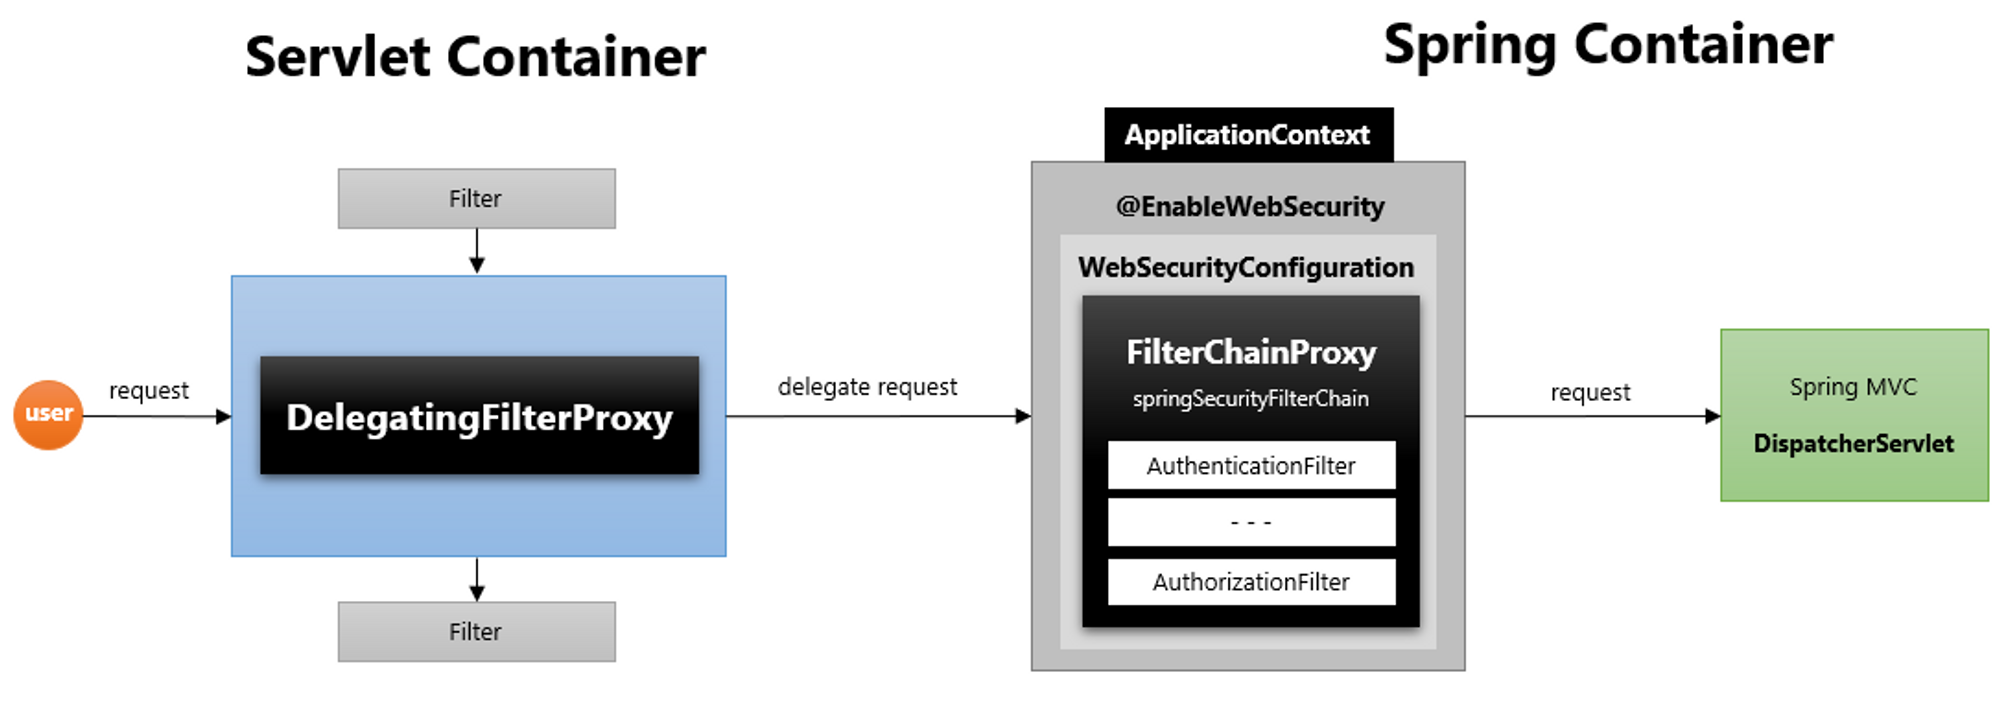 <서블릿 컨테이너와 스프링 컨테이너의 `DelegatingFilterProxy`에 대한 `Flow`>